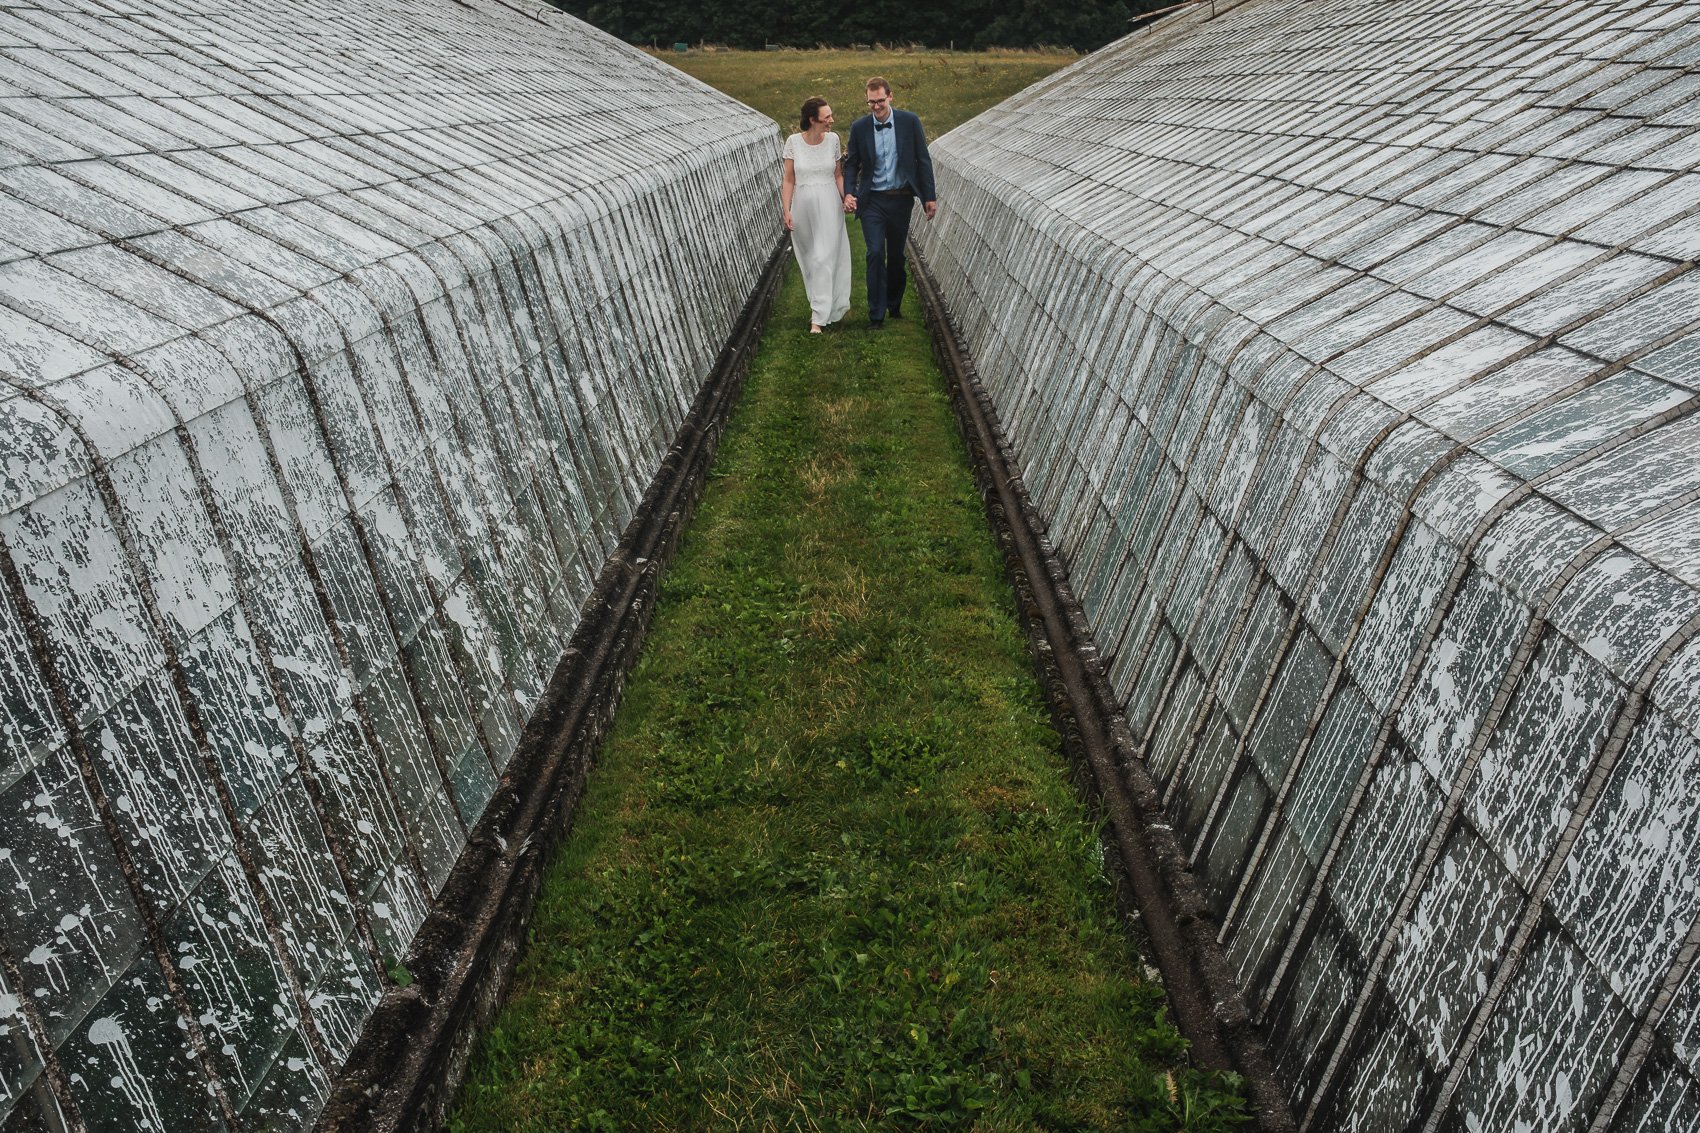 Lensmens - trouwfotograaf elopement lise bruno overijse-7.jpg